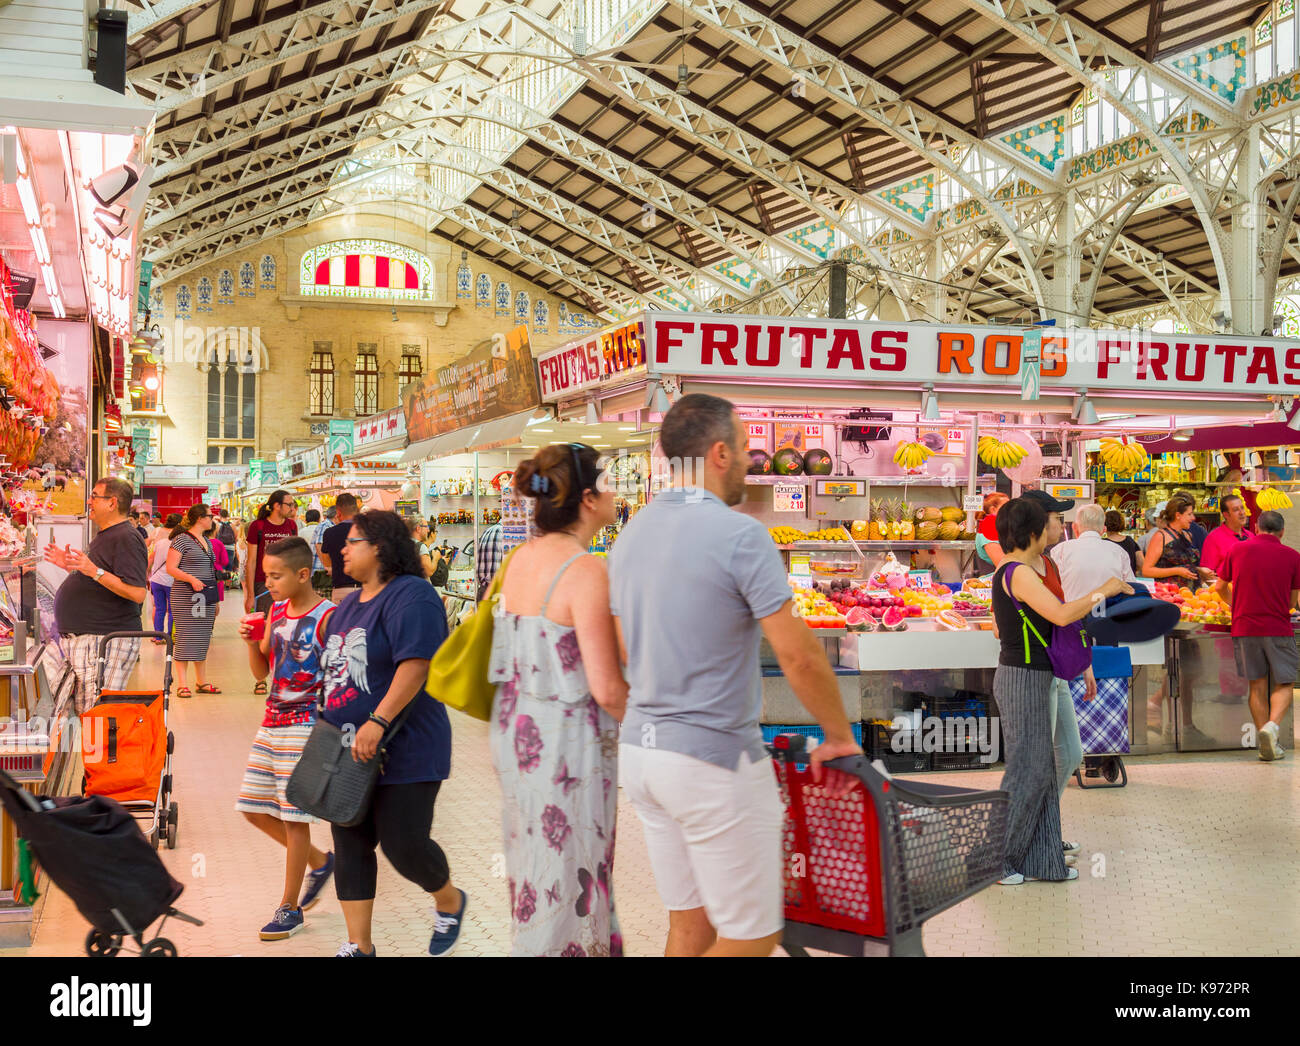 The indoor Central Market (Mercat Central / Mercado Central), Valencia, Spain, Europe. Stock Photo